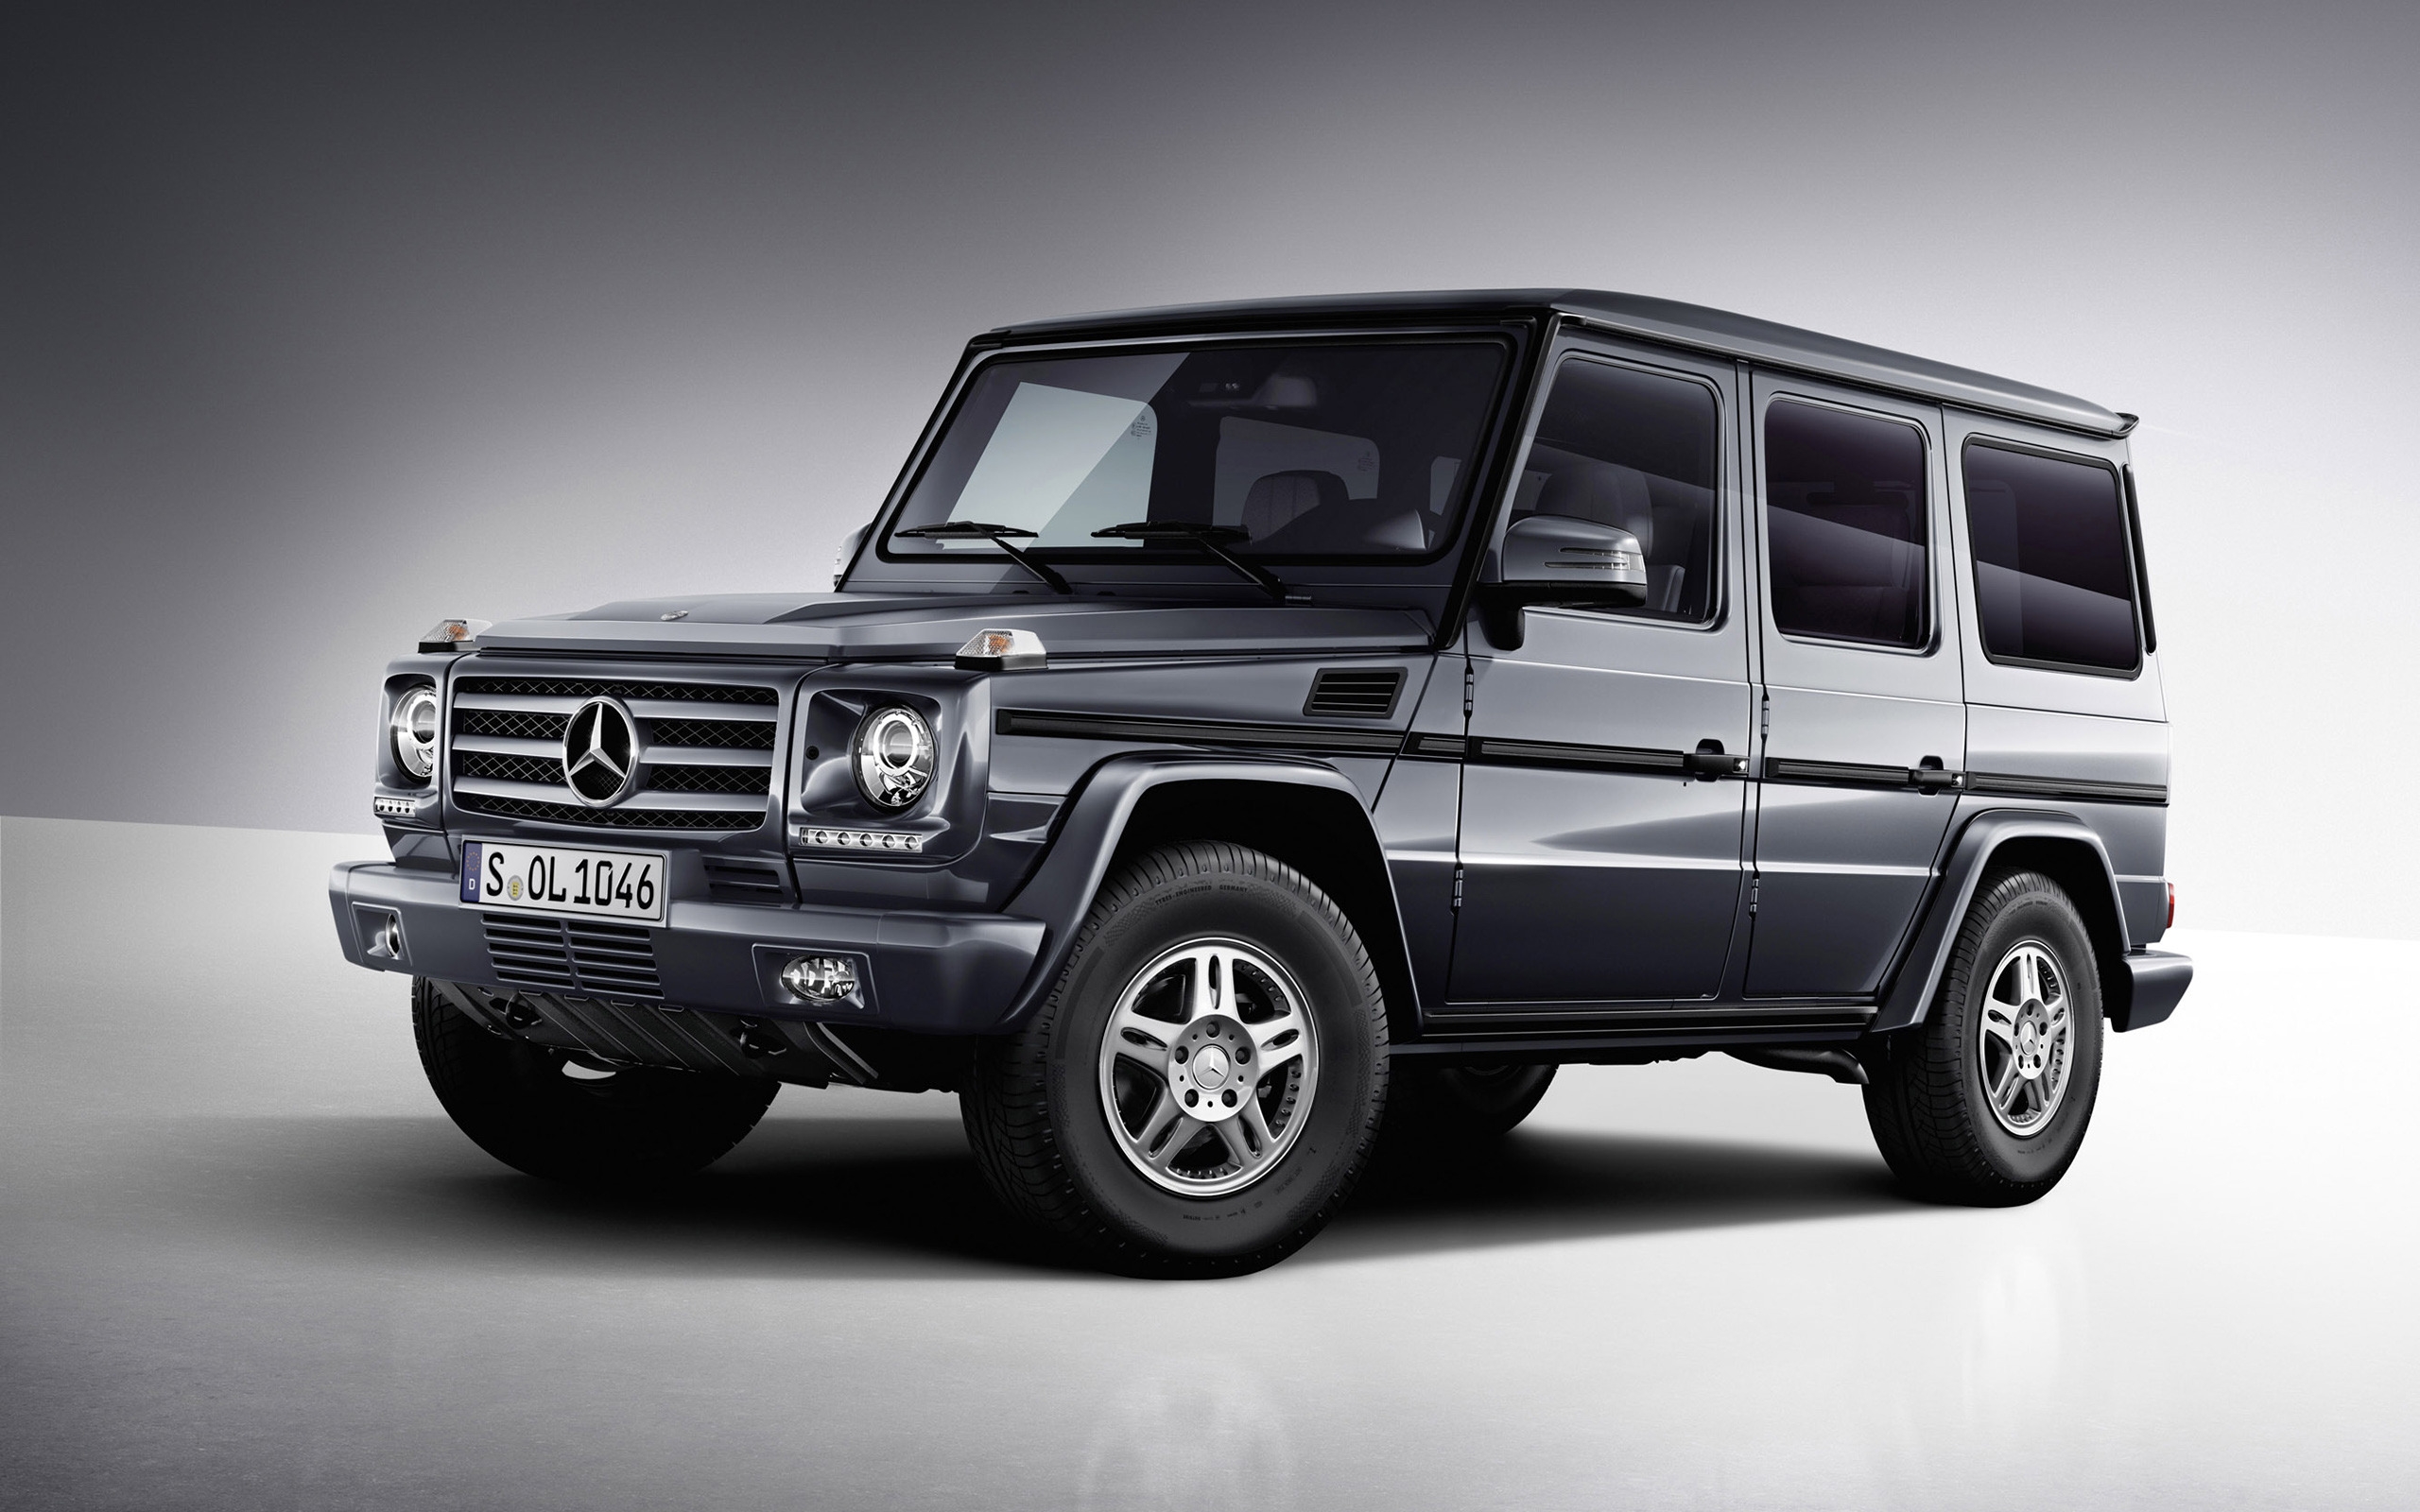 Mercedes Benz G Class Studio 2013 for 2560 x 1600 widescreen resolution